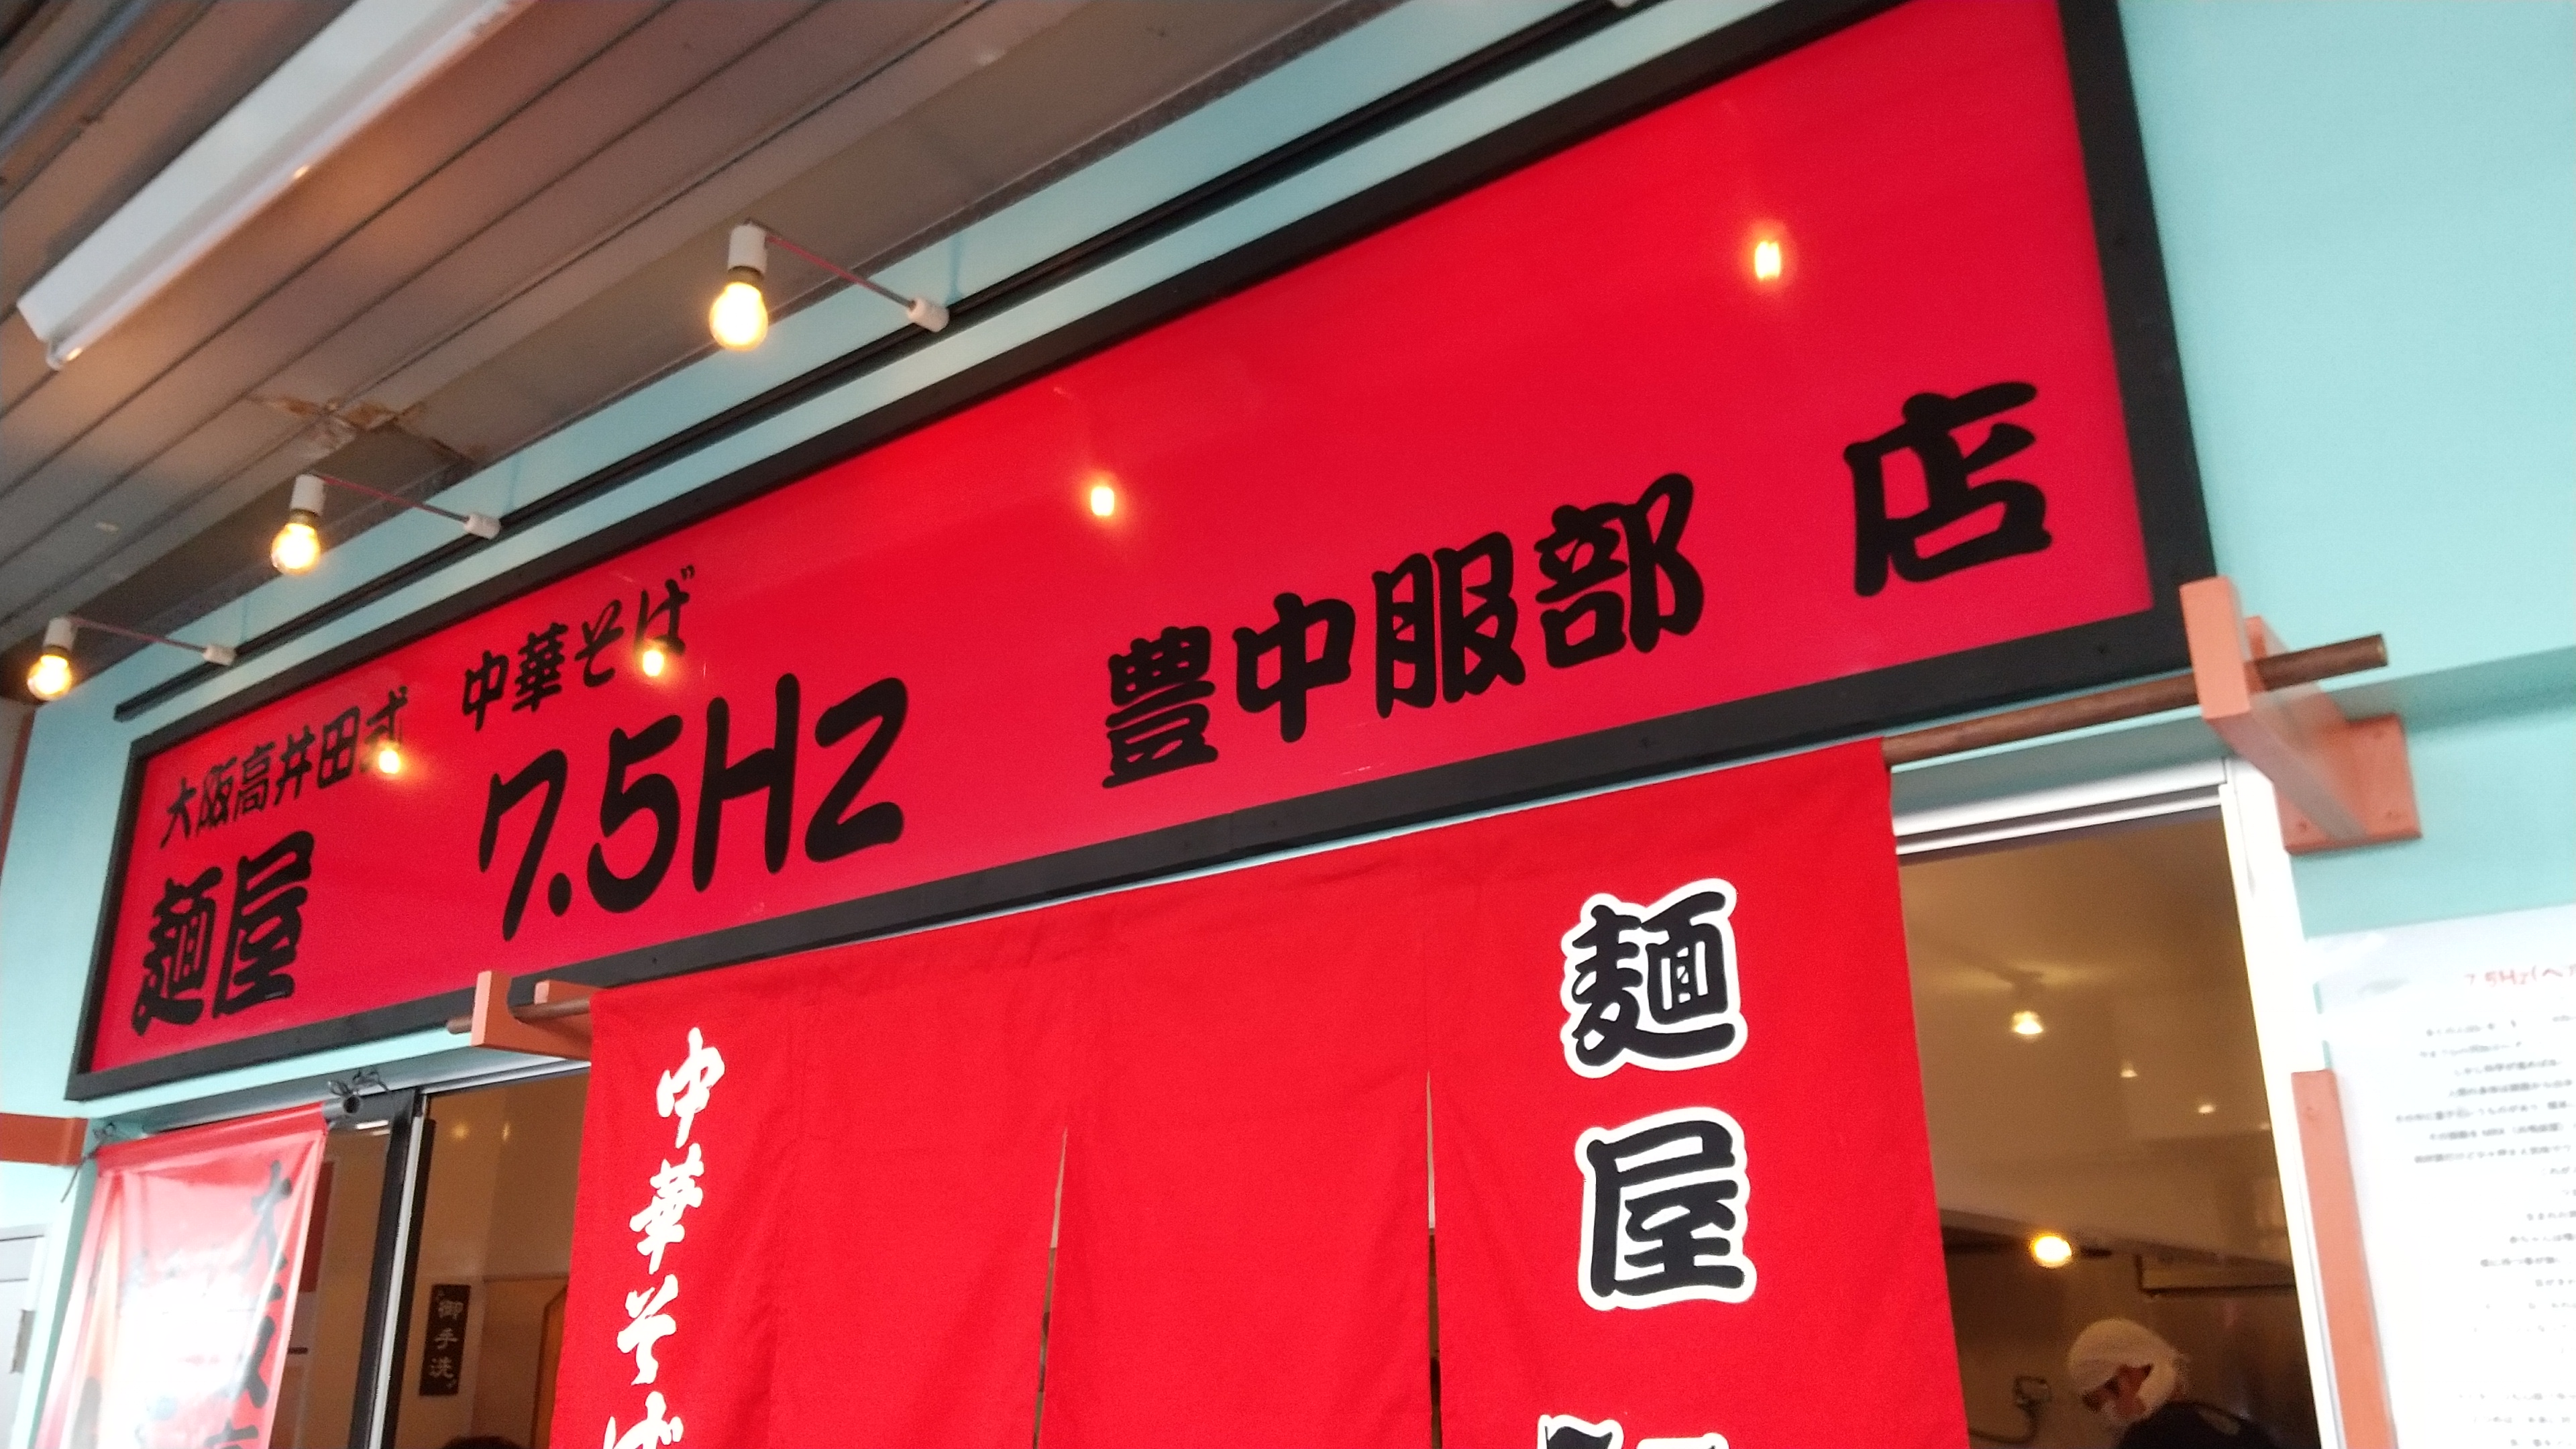 大阪高井田式麺屋7.5Hz